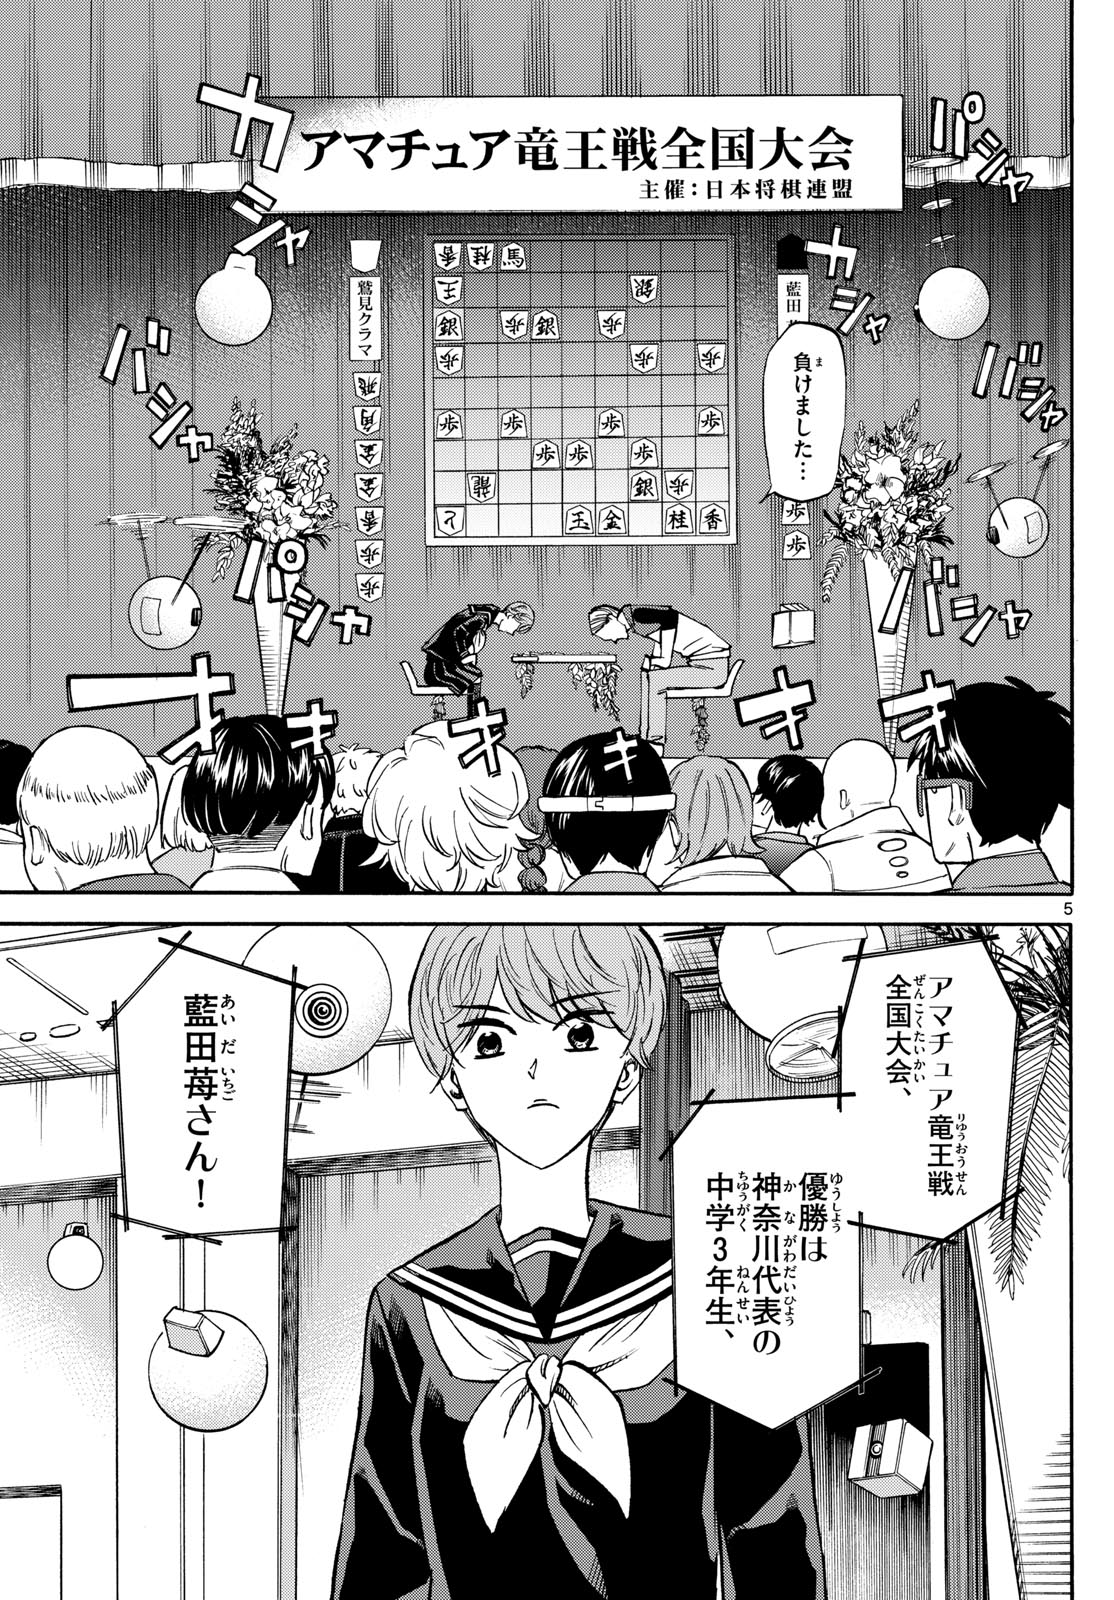 Tatsu to Ichigo - Chapter 186 - Page 5